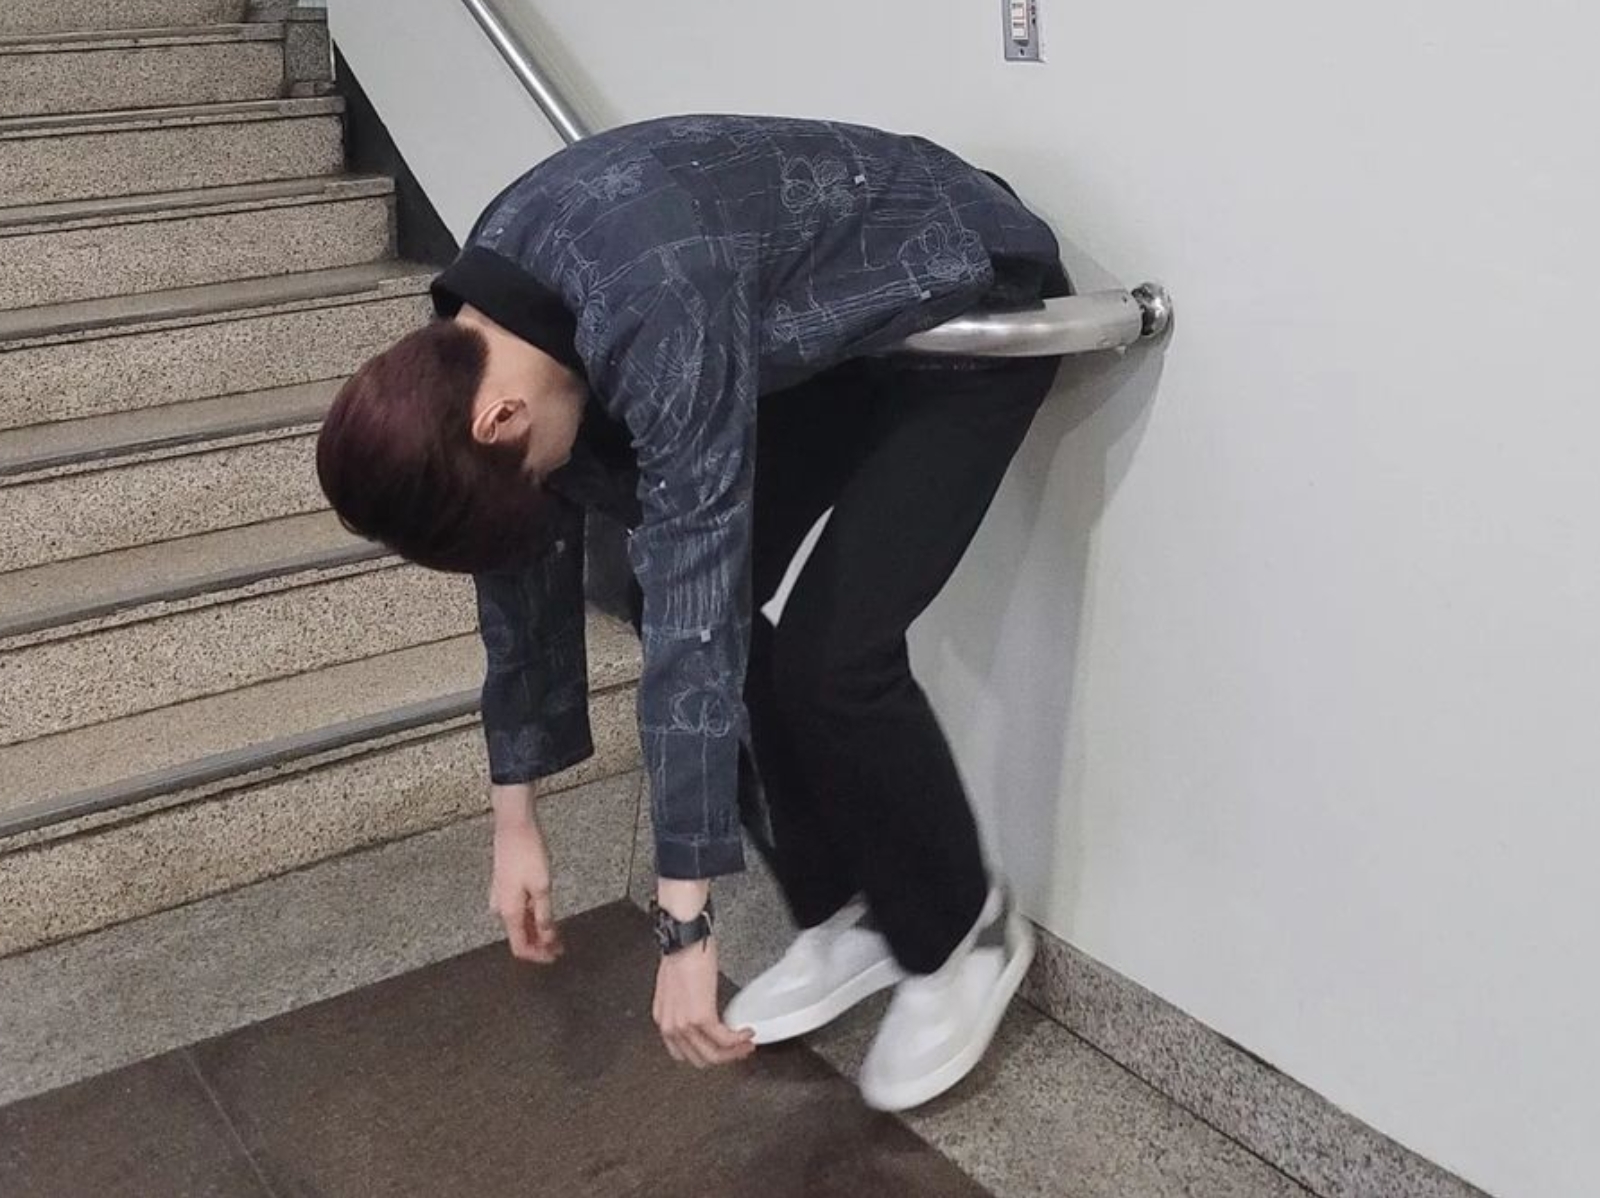 繼倒 V 手勢後，韓星再瘋新拍照姿勢「塞樓梯扶手」！